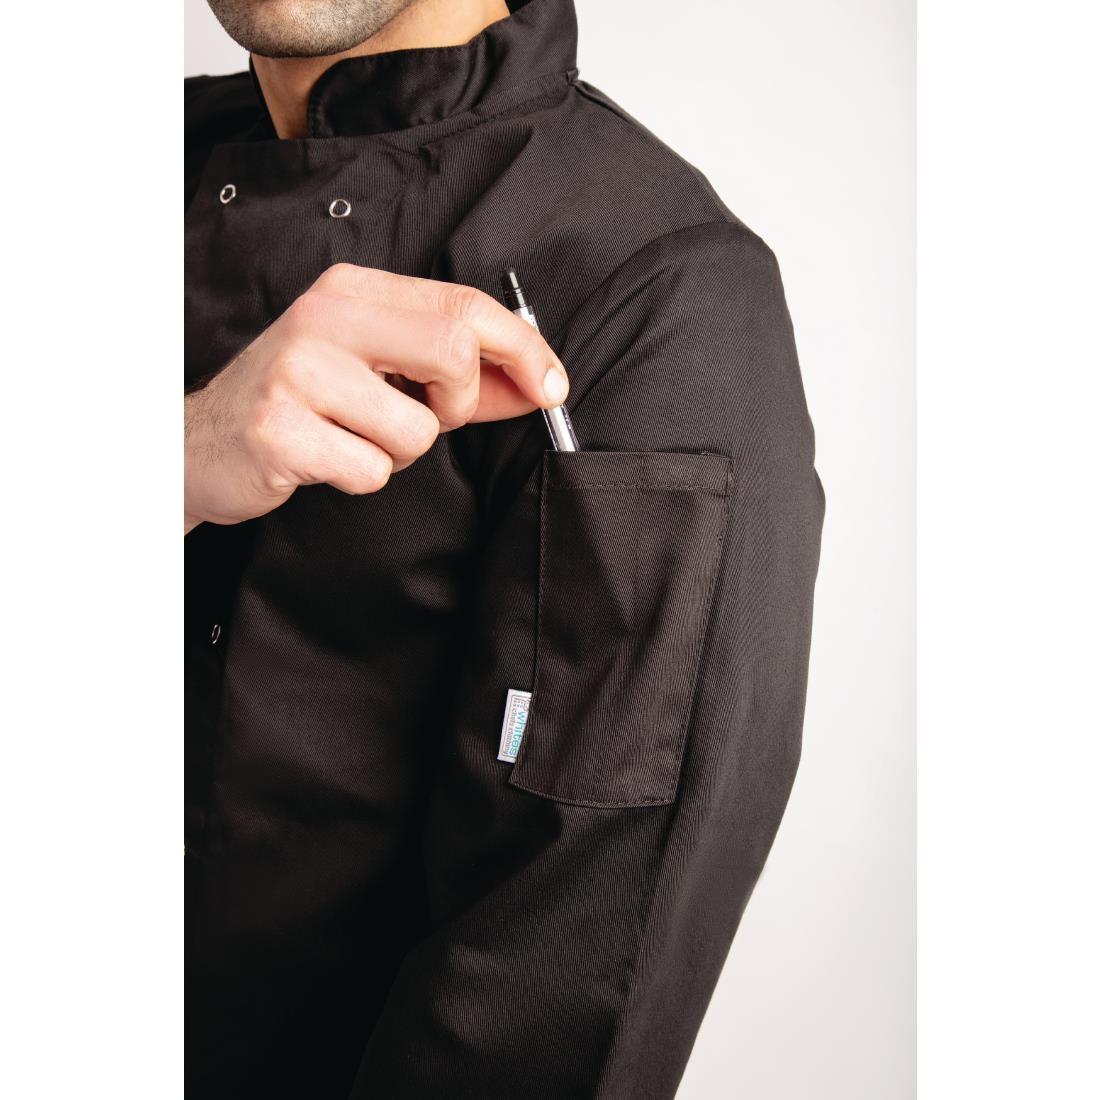 Whites Vegas Unisex Chefs Jacket Long Sleeve Black XL - A438-XL  - 9